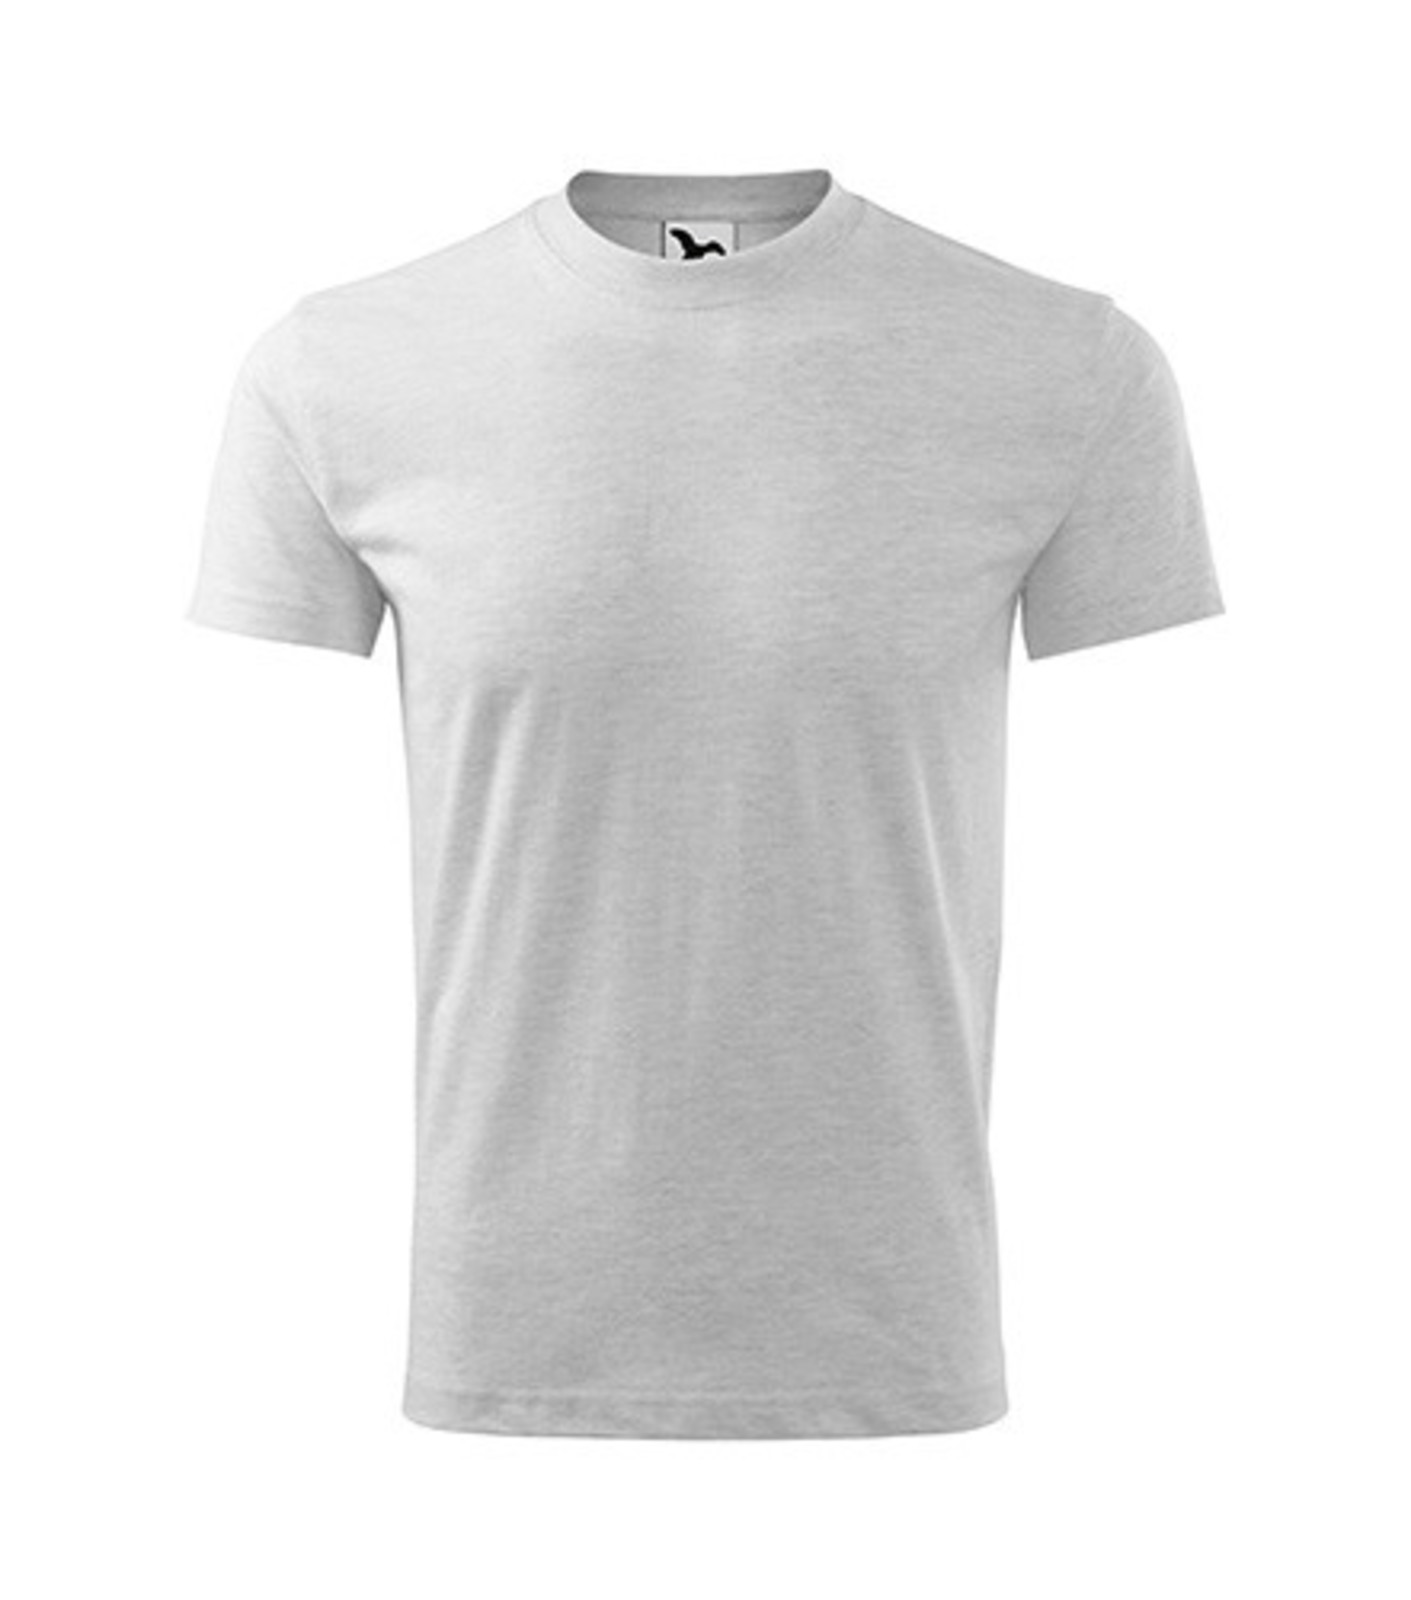 Detské tričko Malfini Basic 138 - veľkosť: 146, farba: svetlosivý melír